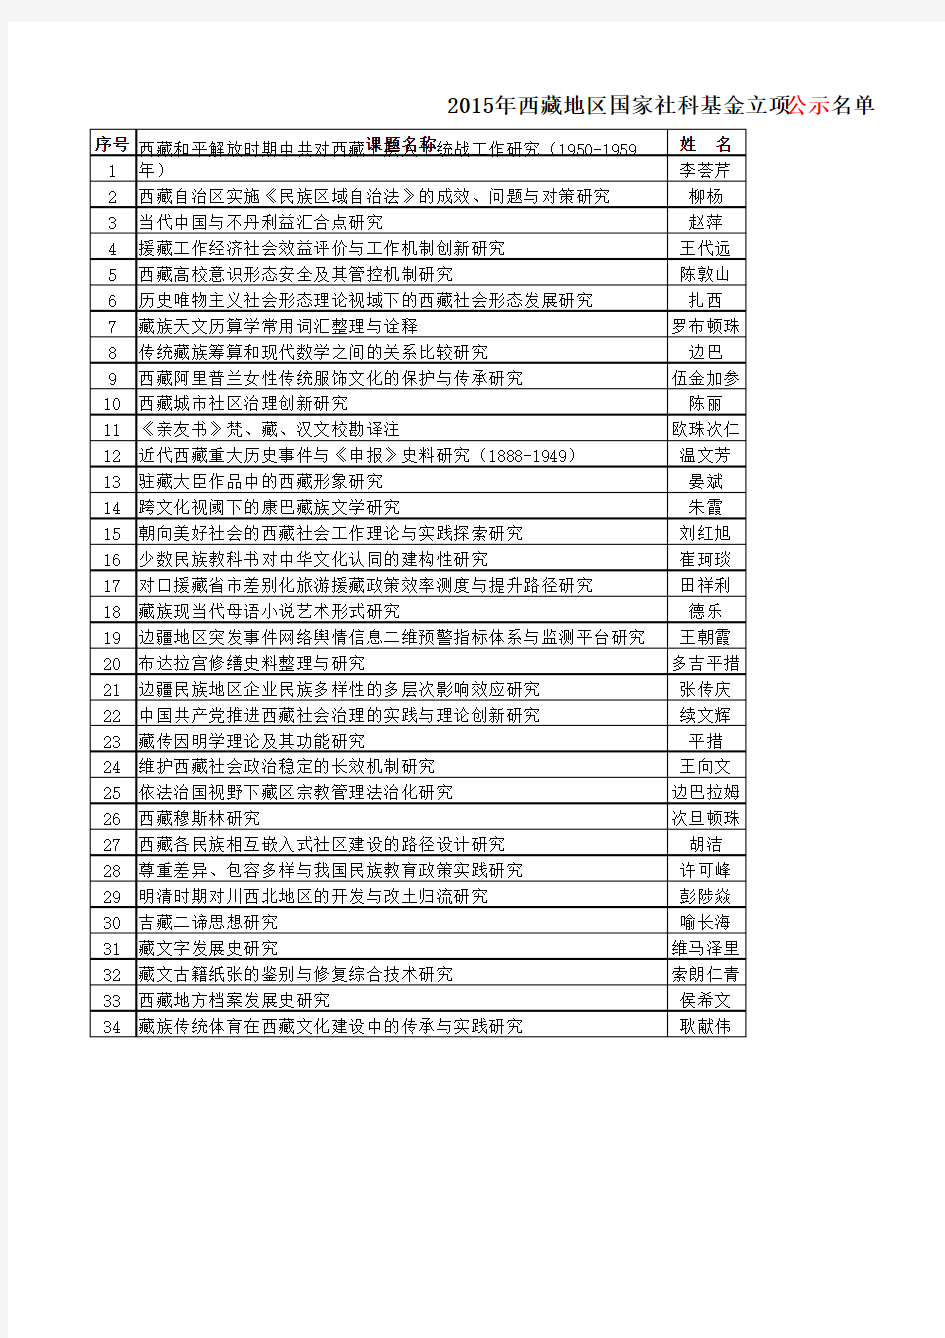 2015年国家社科基金立项公示名单--西藏部分